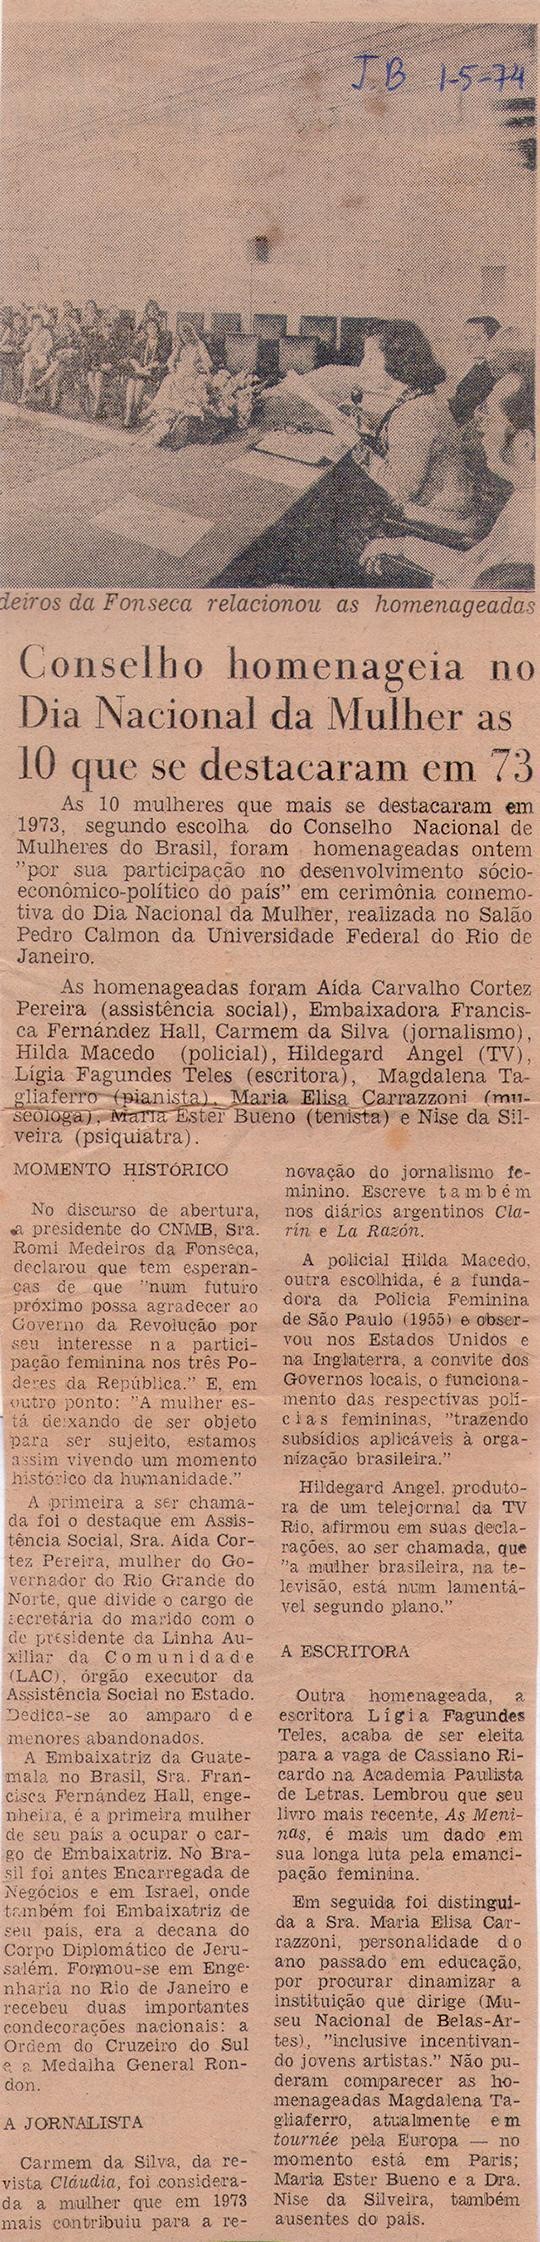 01 de Maio de 1974 - Jornal do Brasil. Conselho homenageia no Dia Nacional da Mulher as 10 que se destacaram em 73.